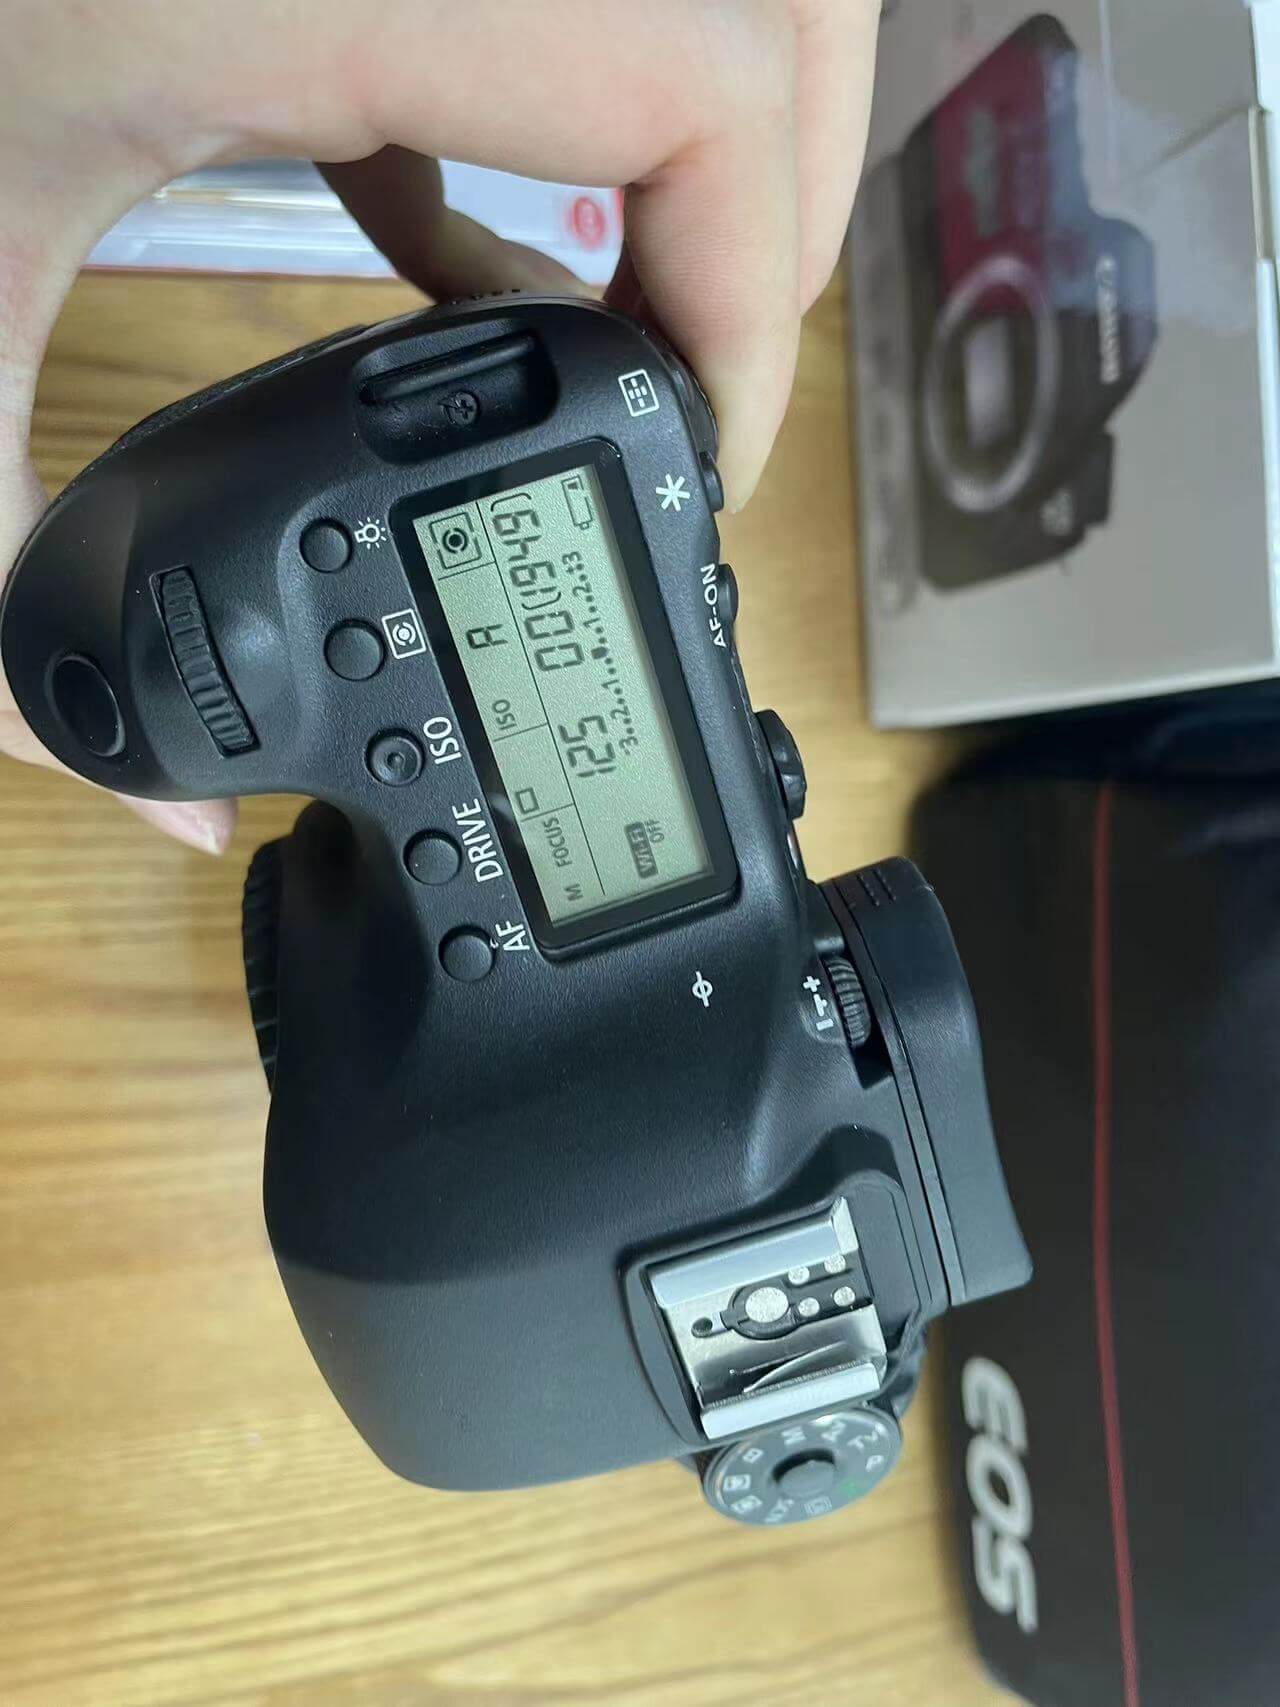      6d camera